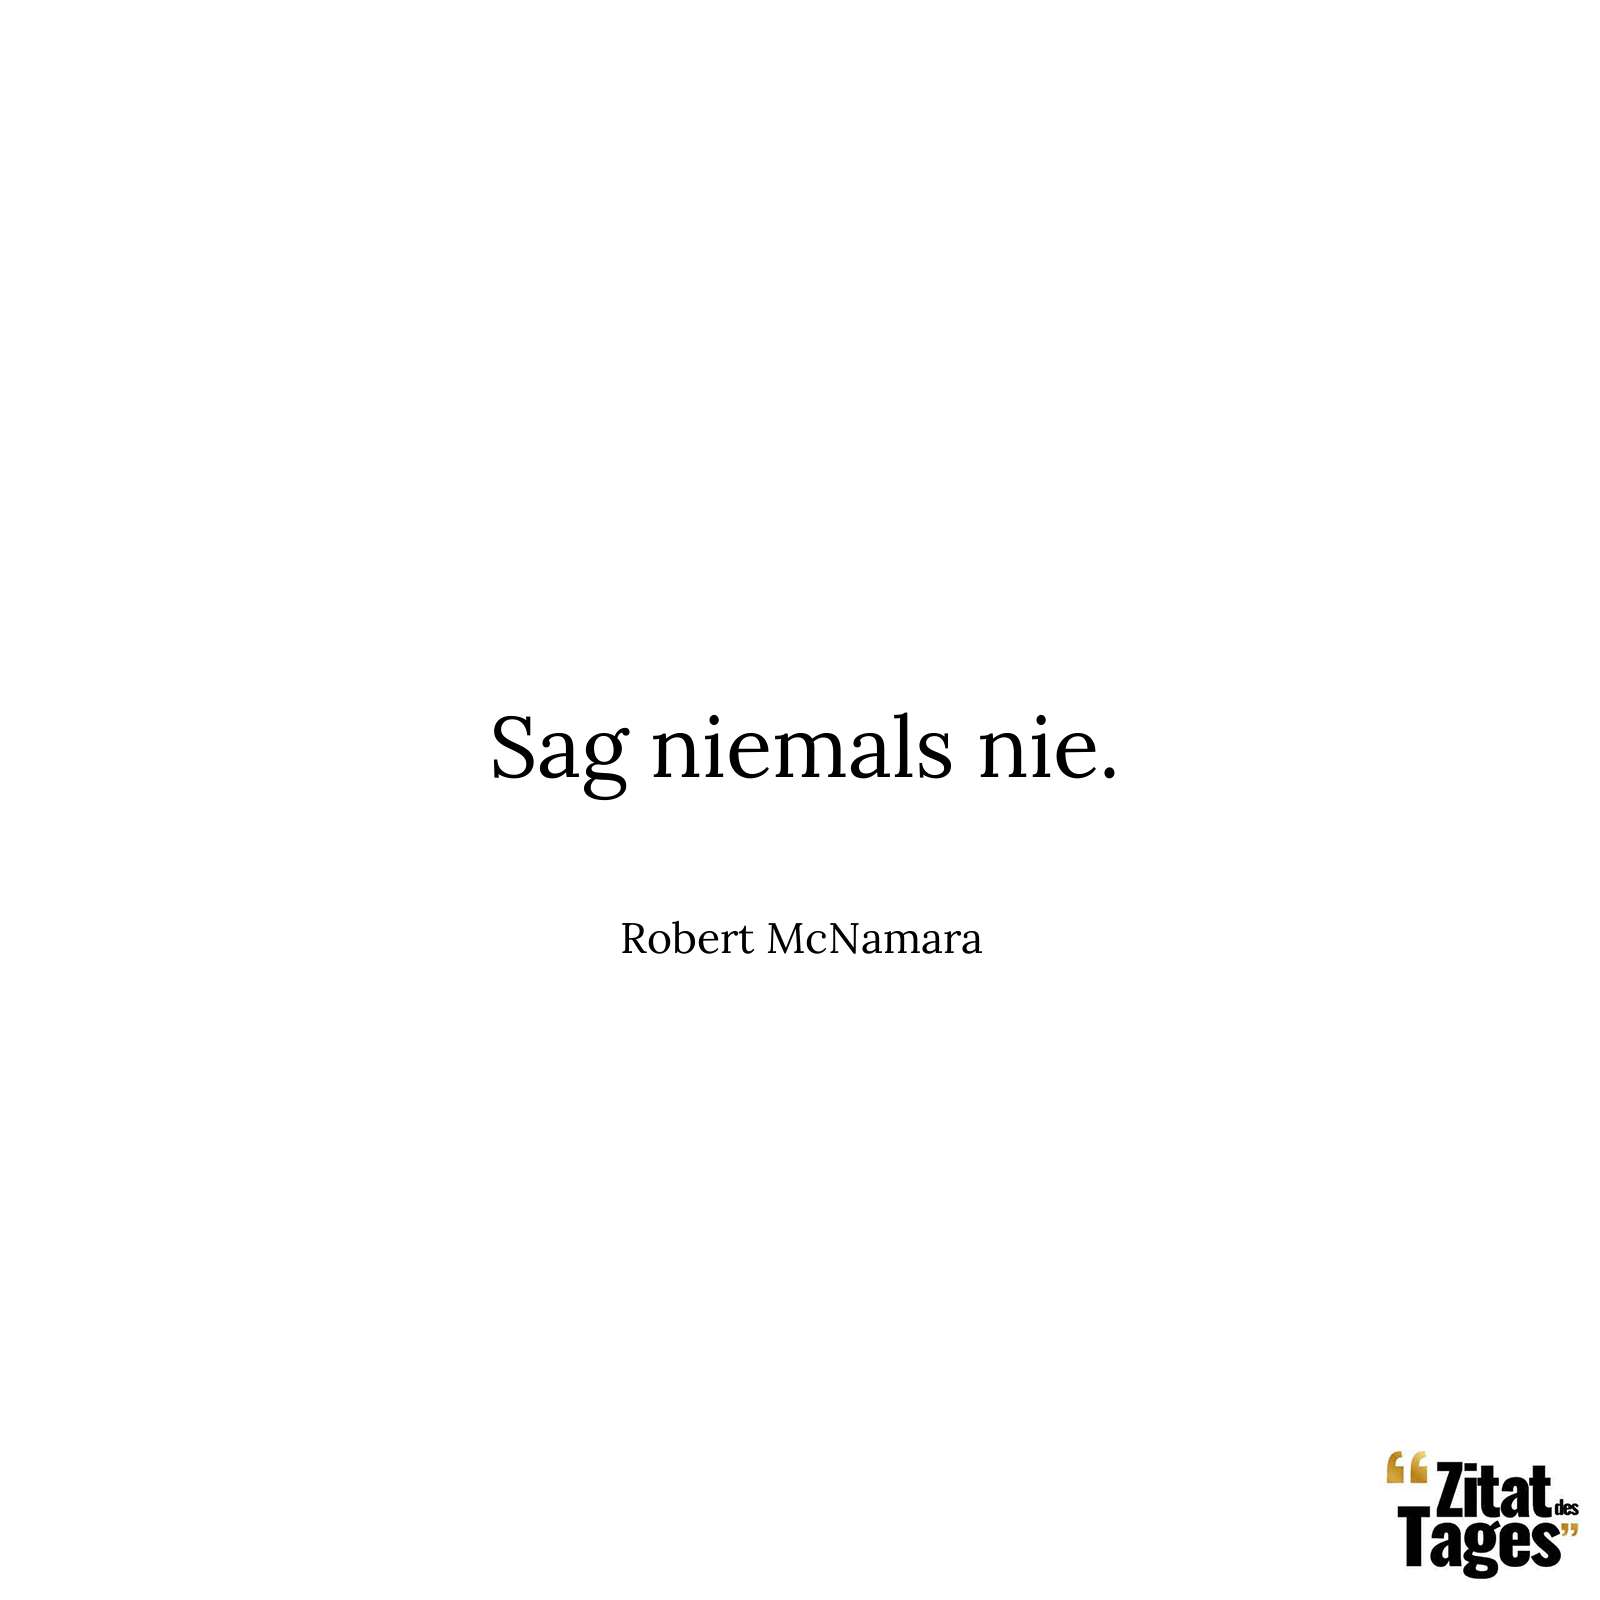 Sag niemals nie. - Robert McNamara